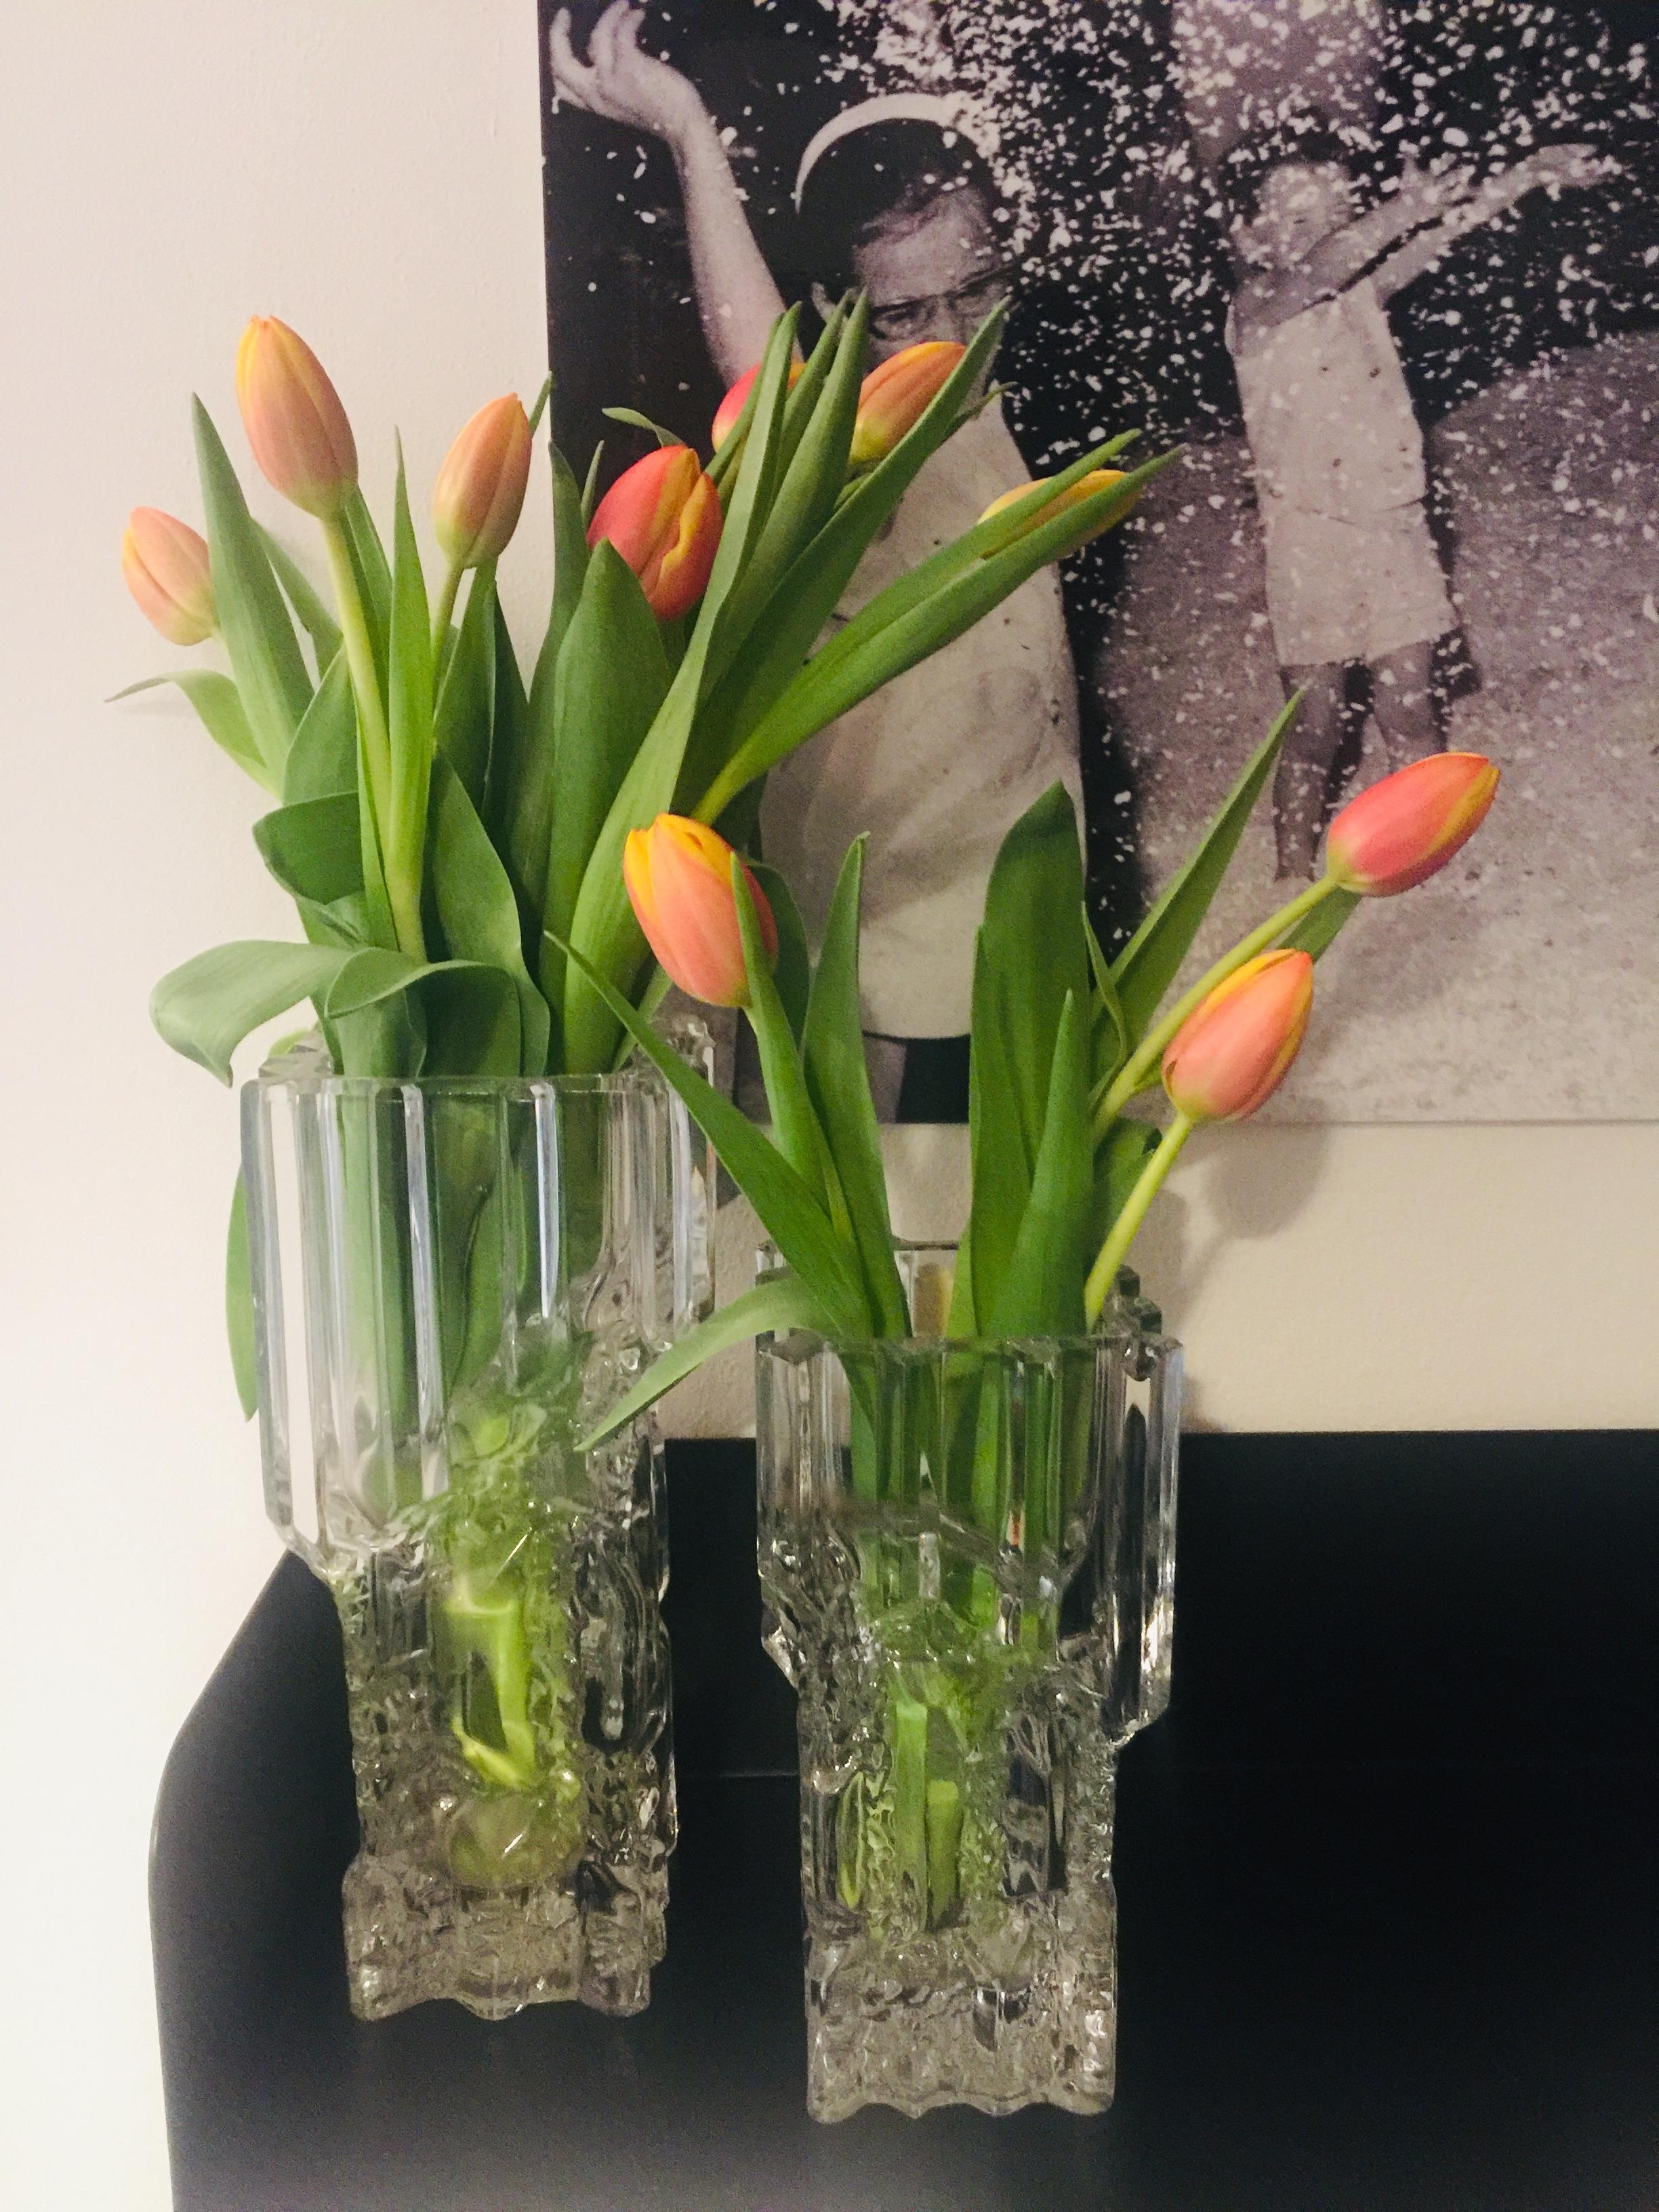 Vintage vases#Brutalism#Tulips